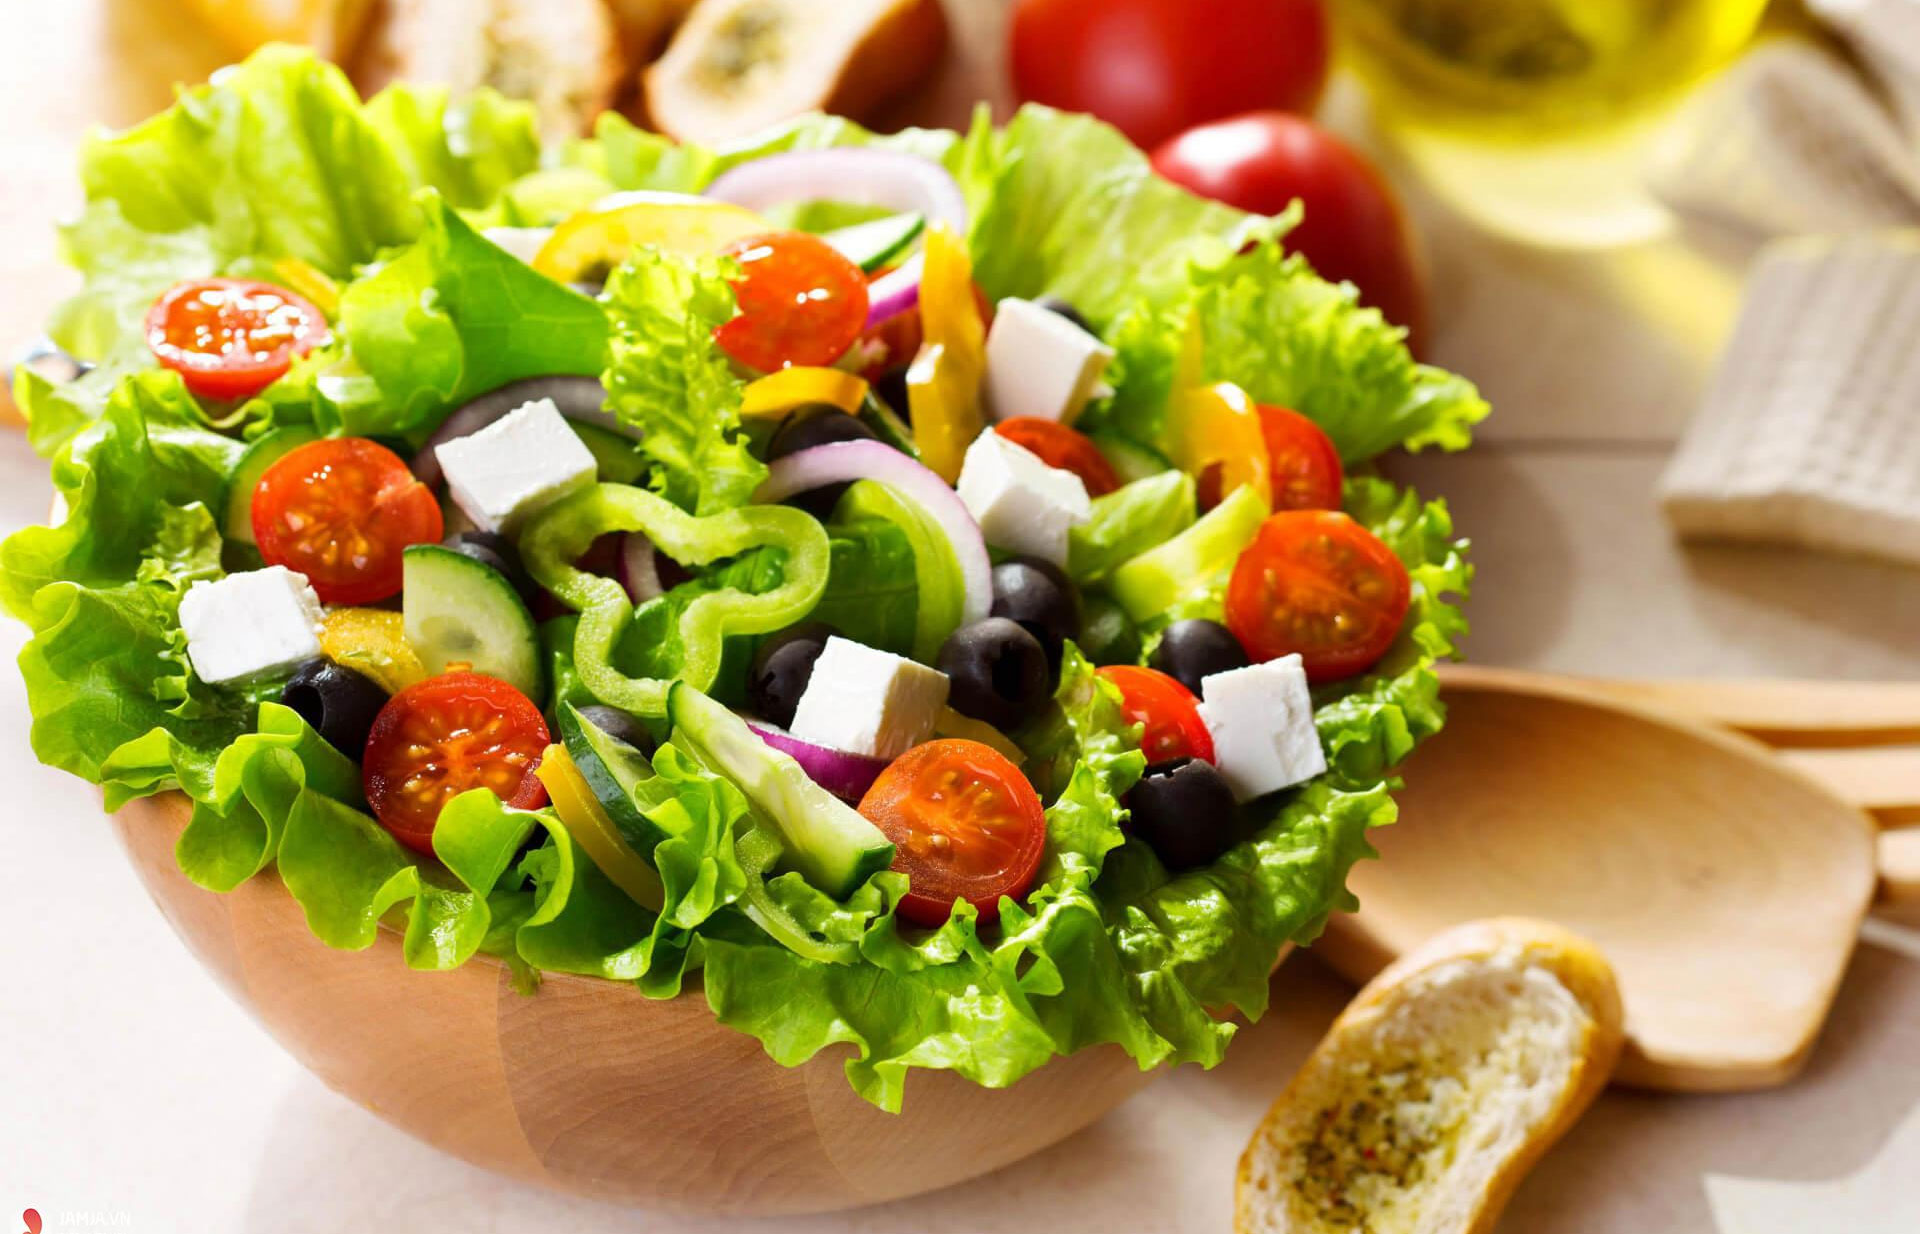 Salad rau trộn vô cùng ngon miệng